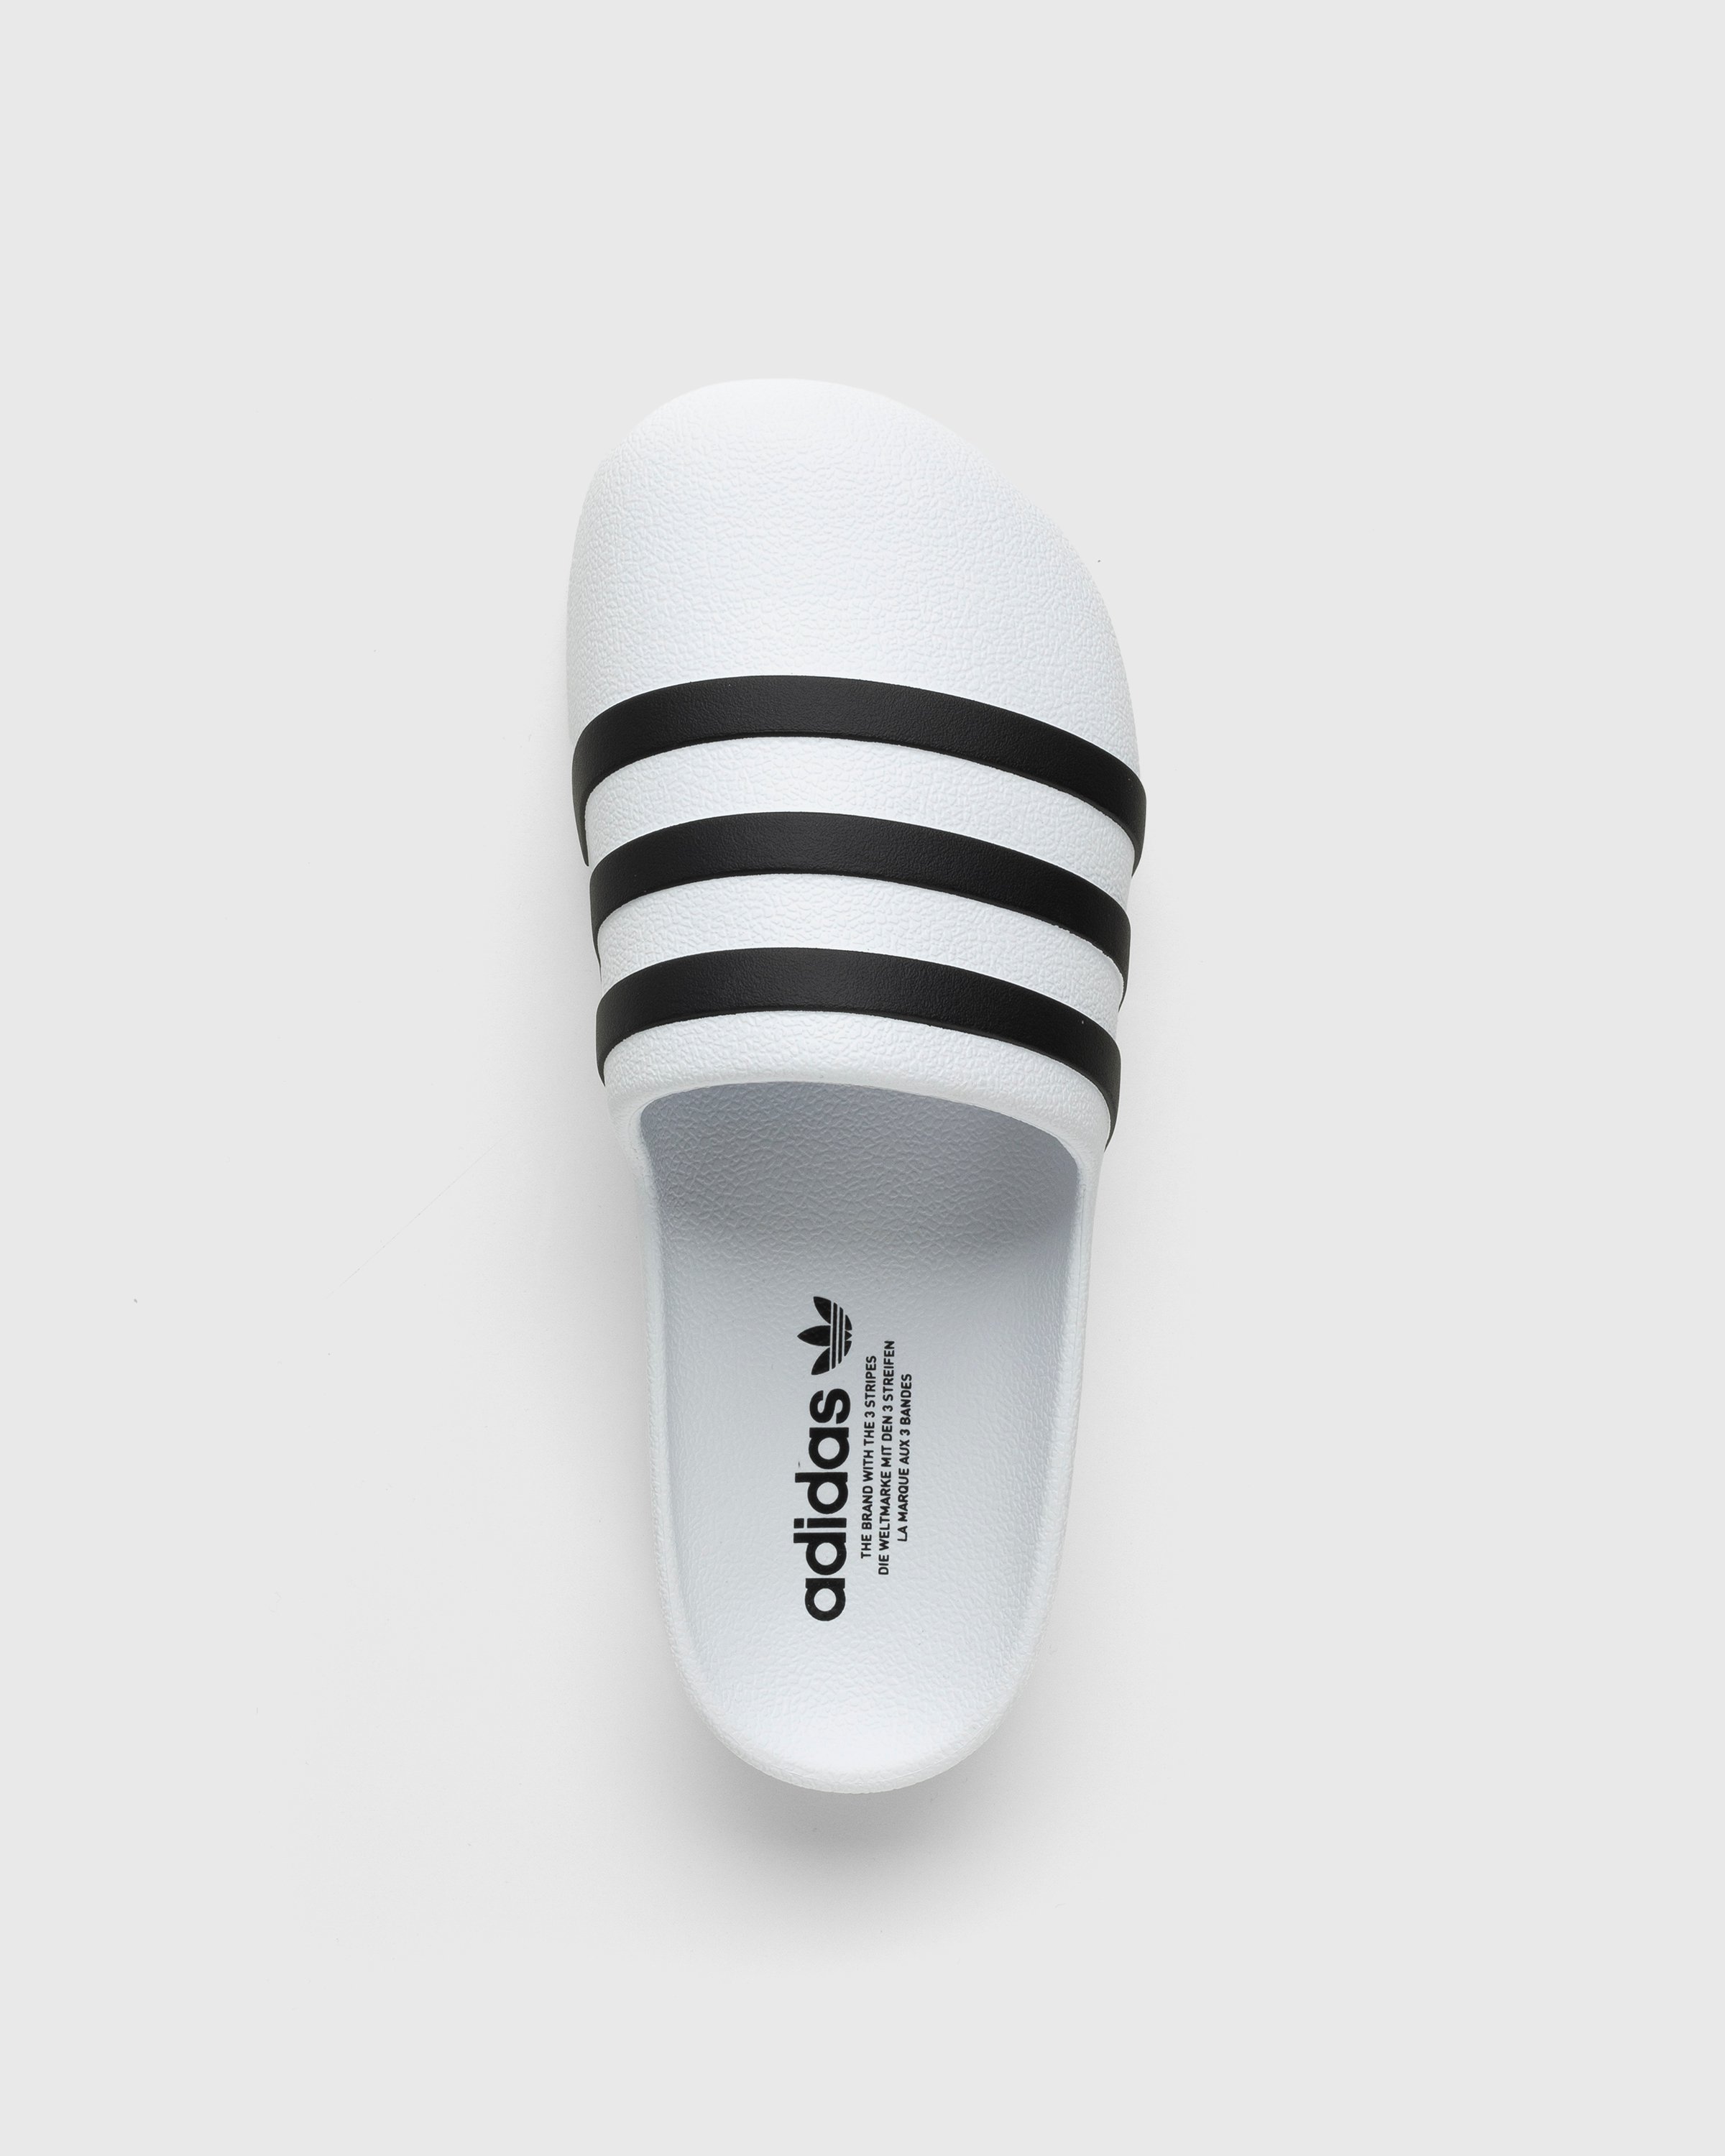 Adidas - Adifom Adilette White/Black/White - Footwear - White - Image 5